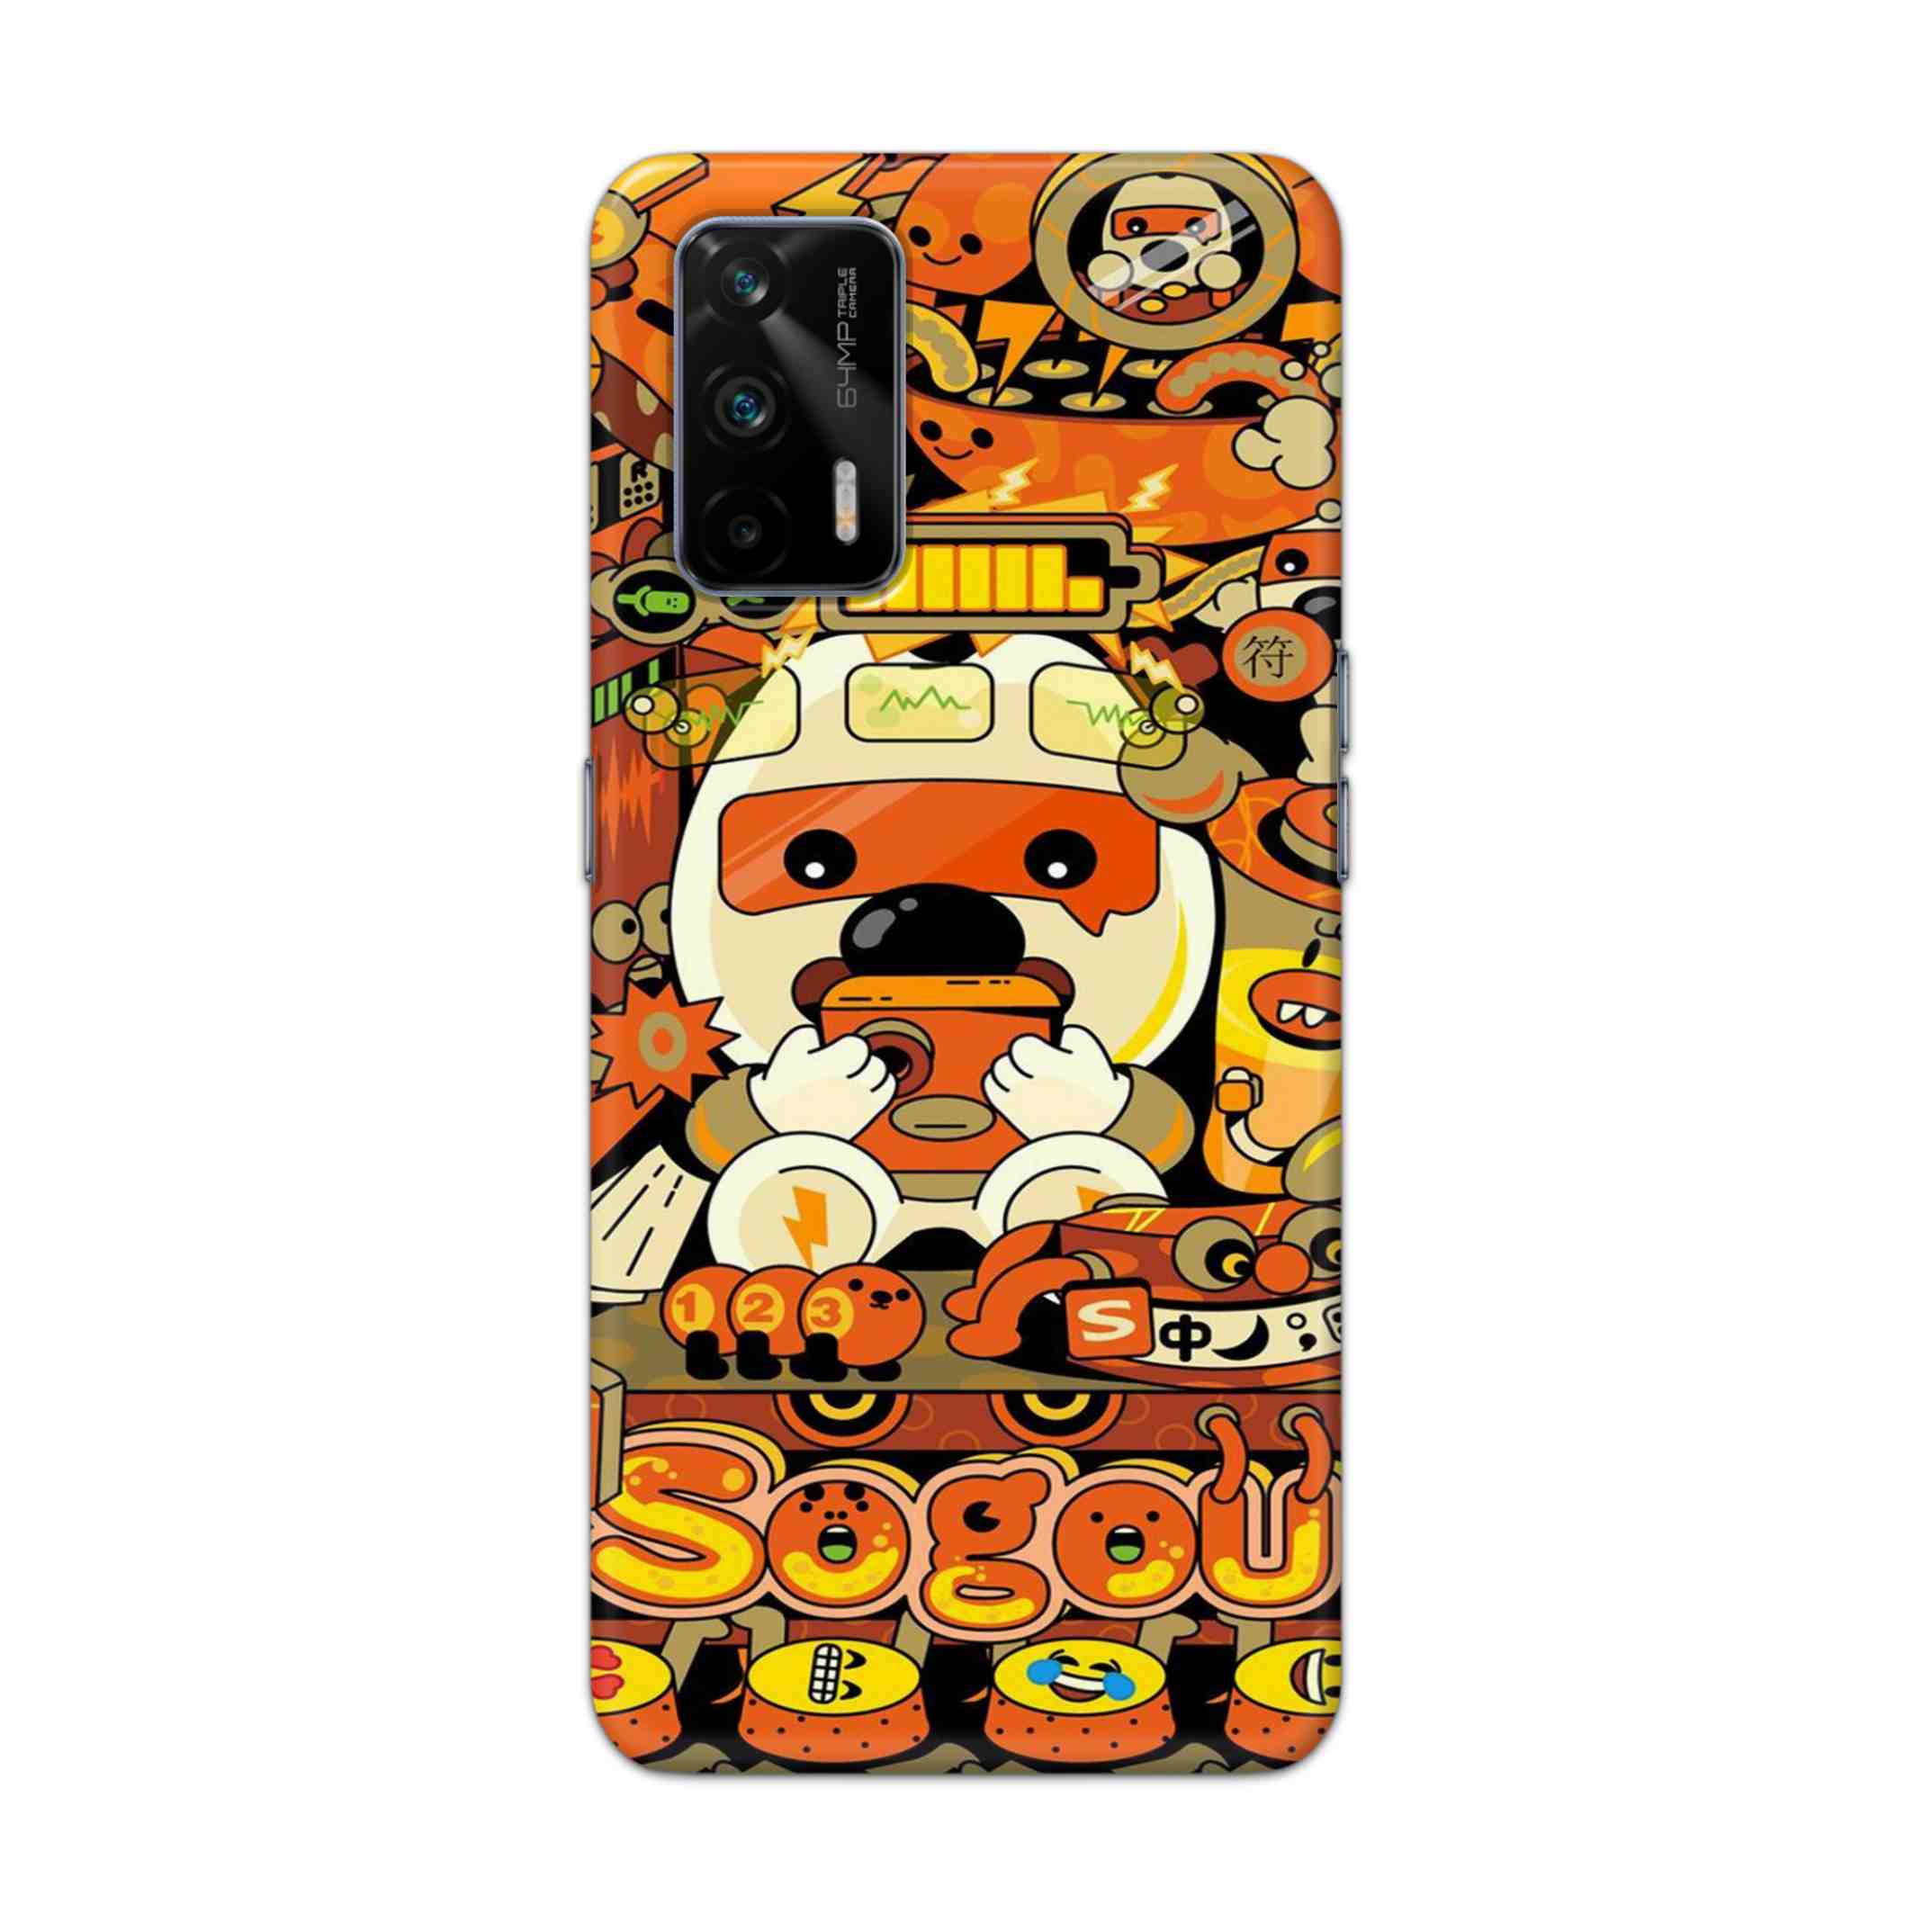 Buy Sogou Hard Back Mobile Phone Case Cover For Realme GT 5G Online